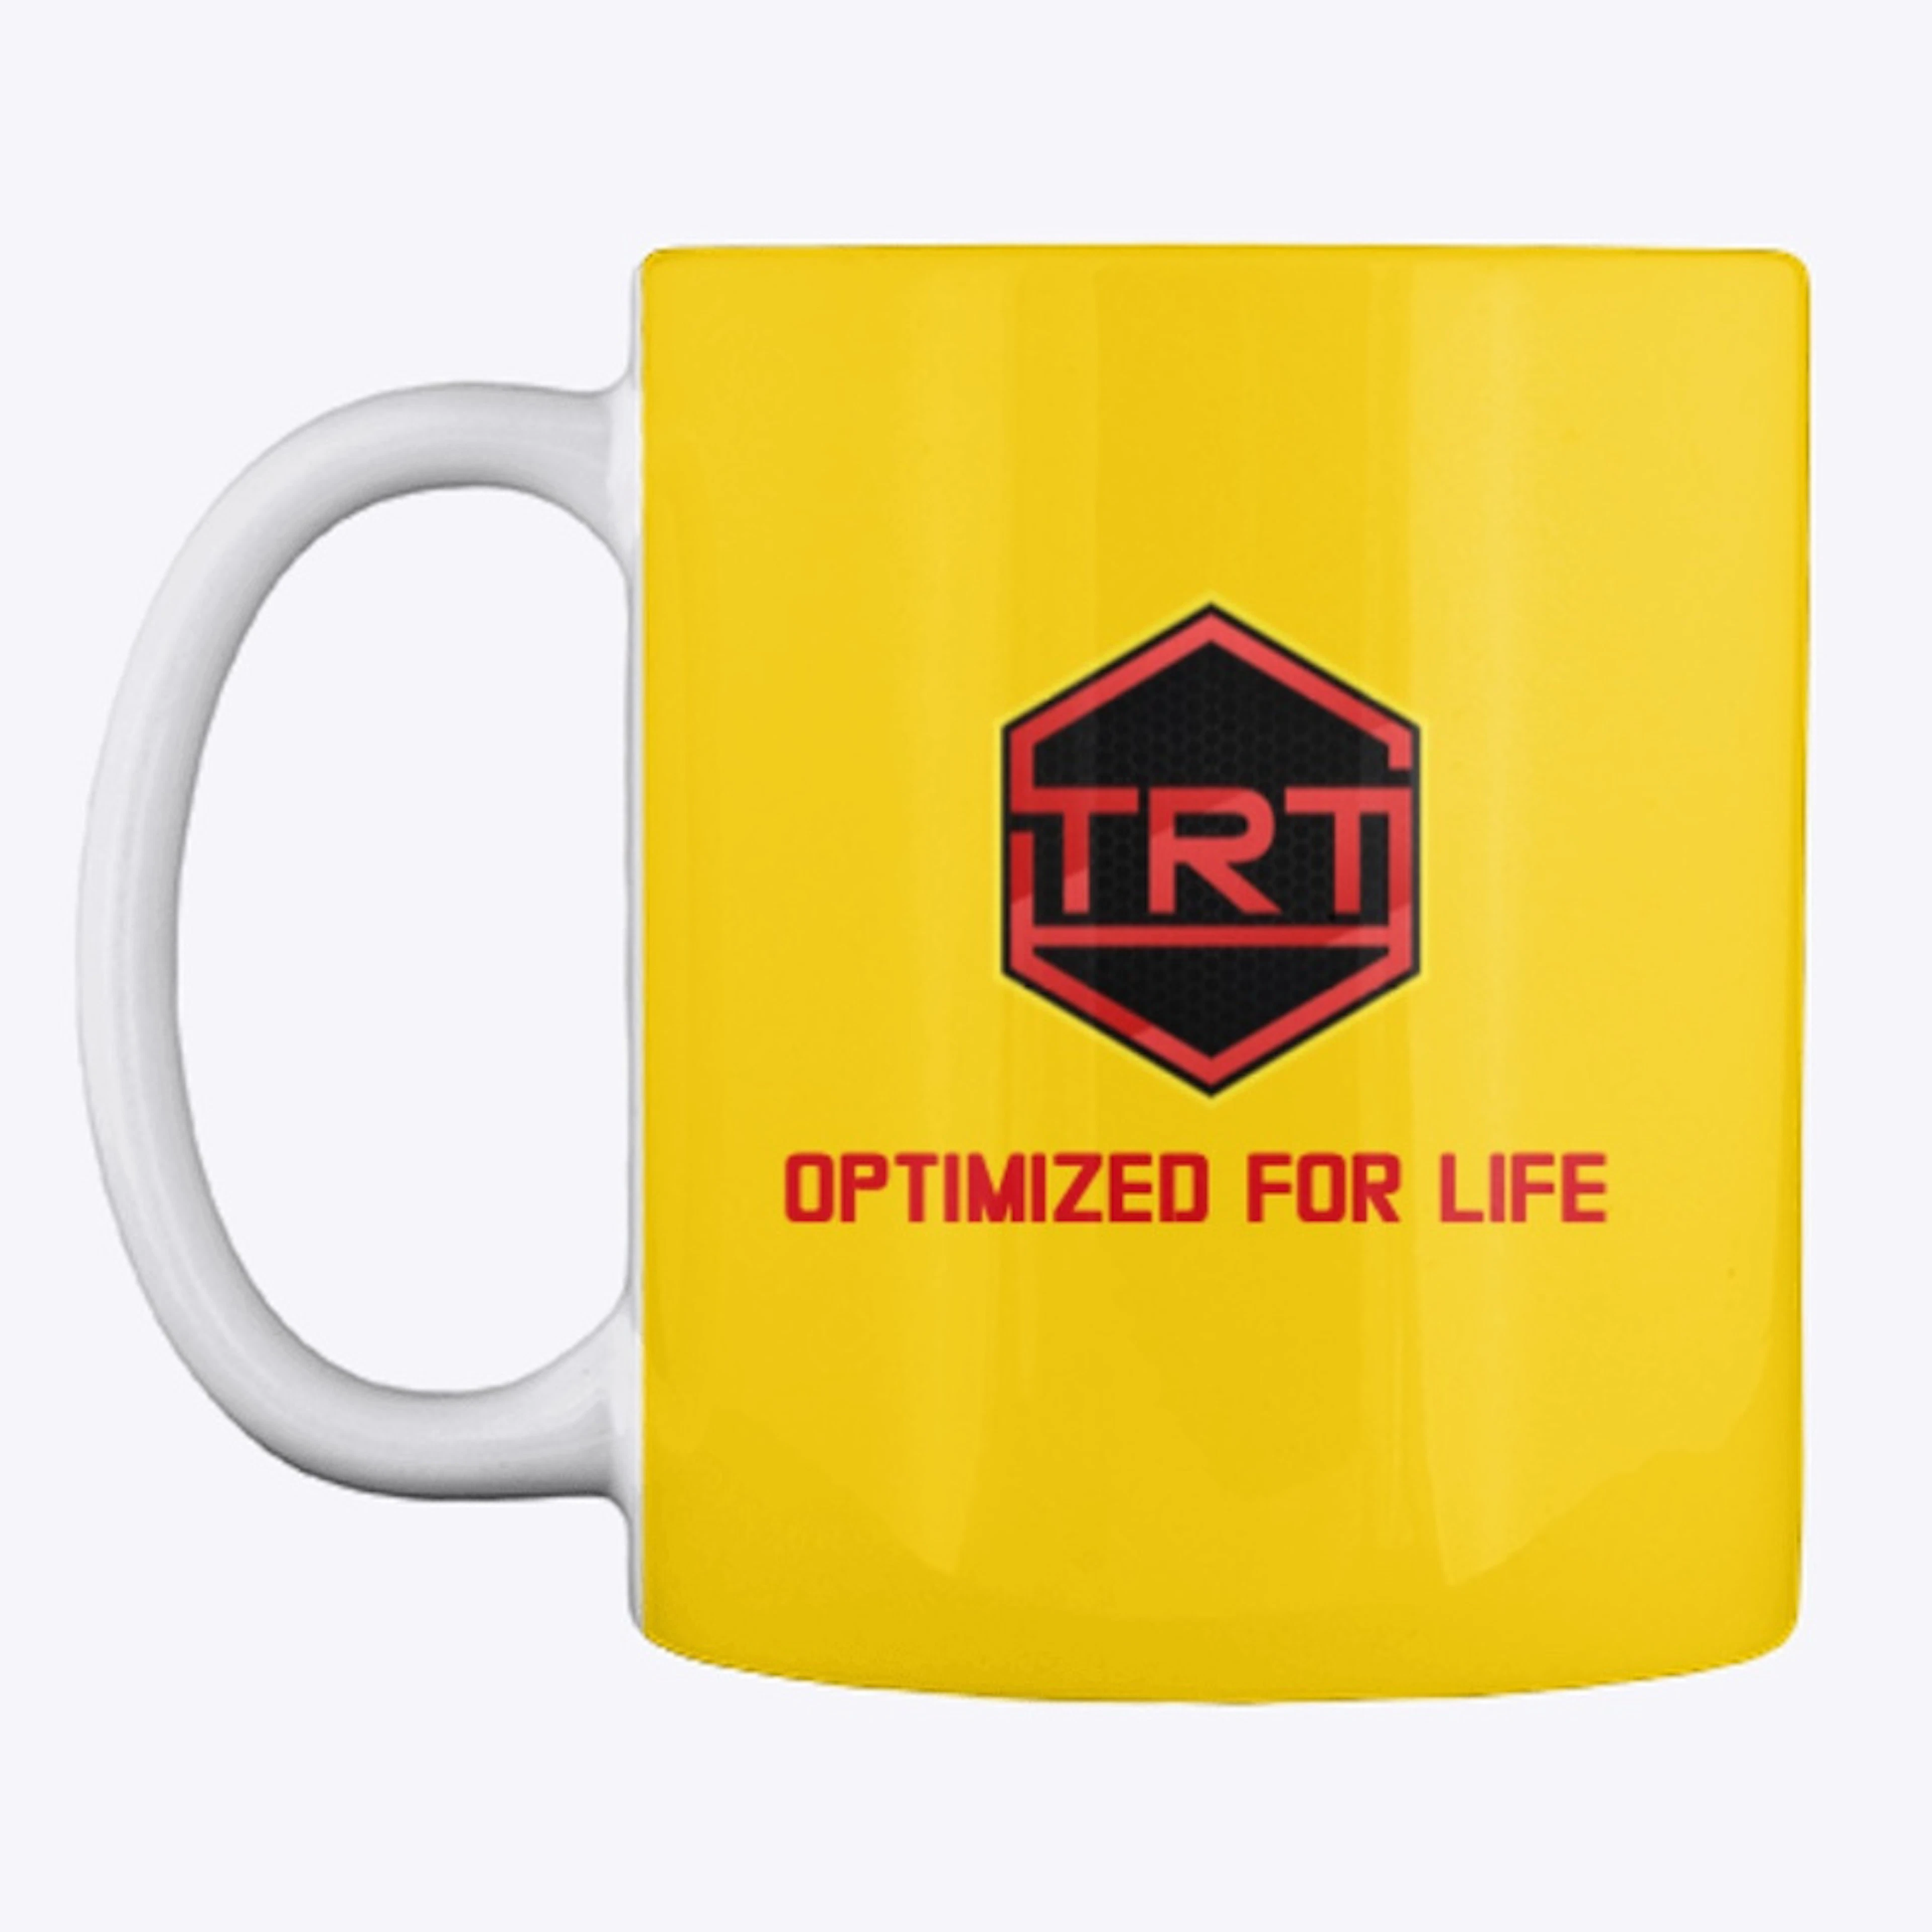 TRT Logo + Optimized for Life